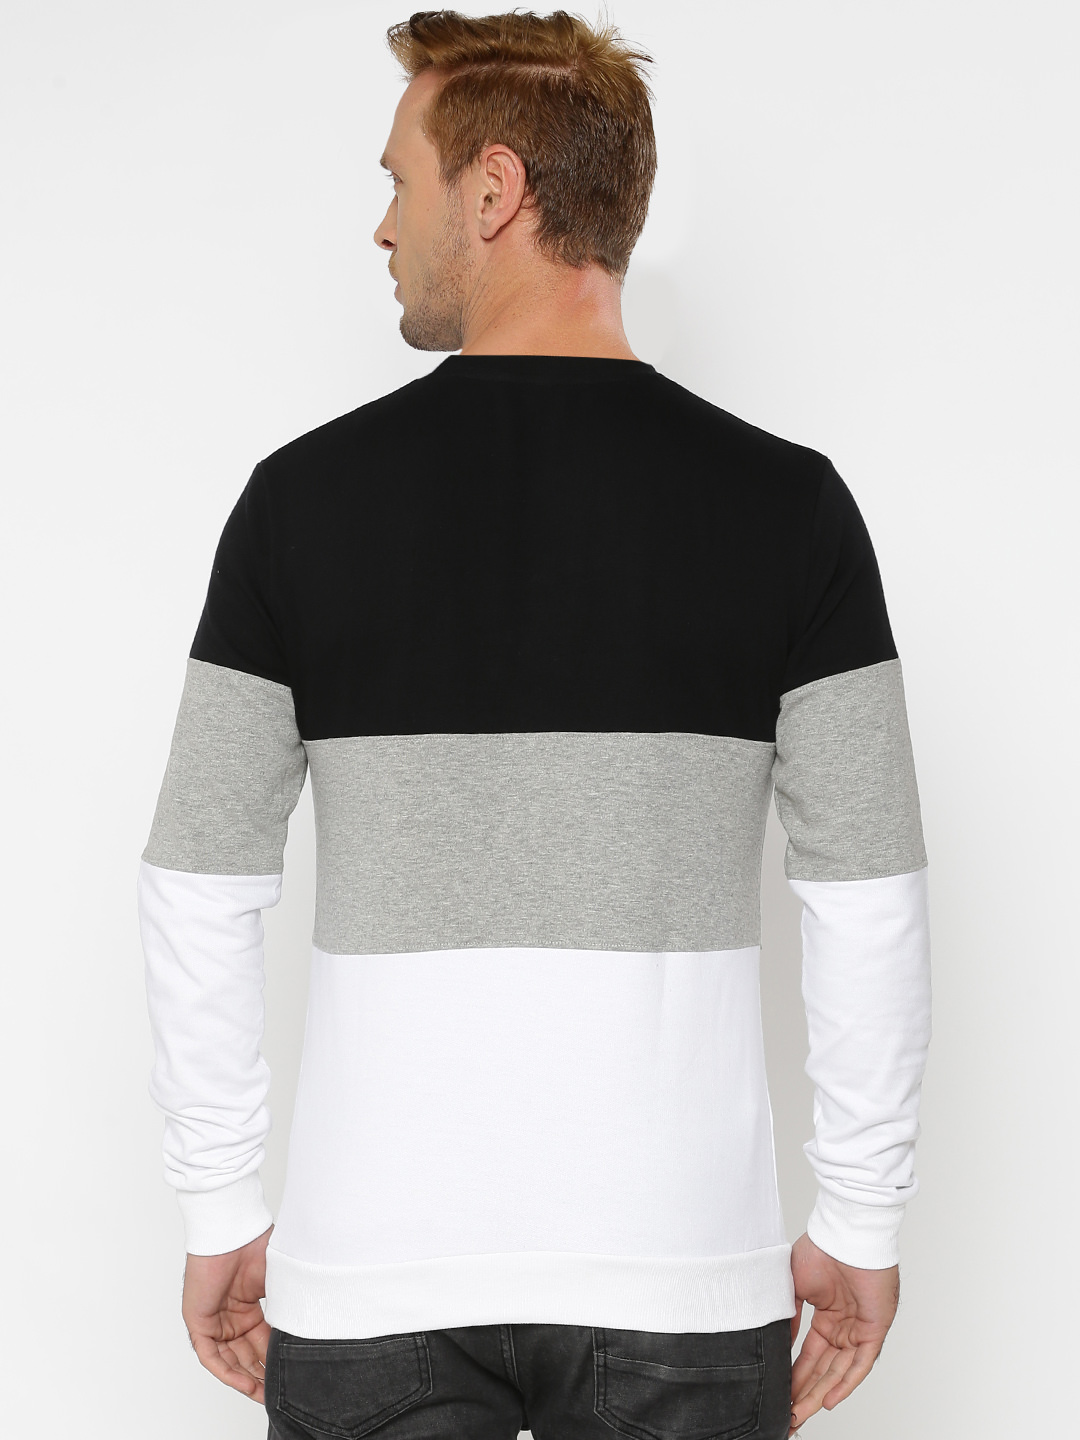 Buy Genius18 Men's Multicolor Solid Round Neck Non- Hooded Sweatshirt ...